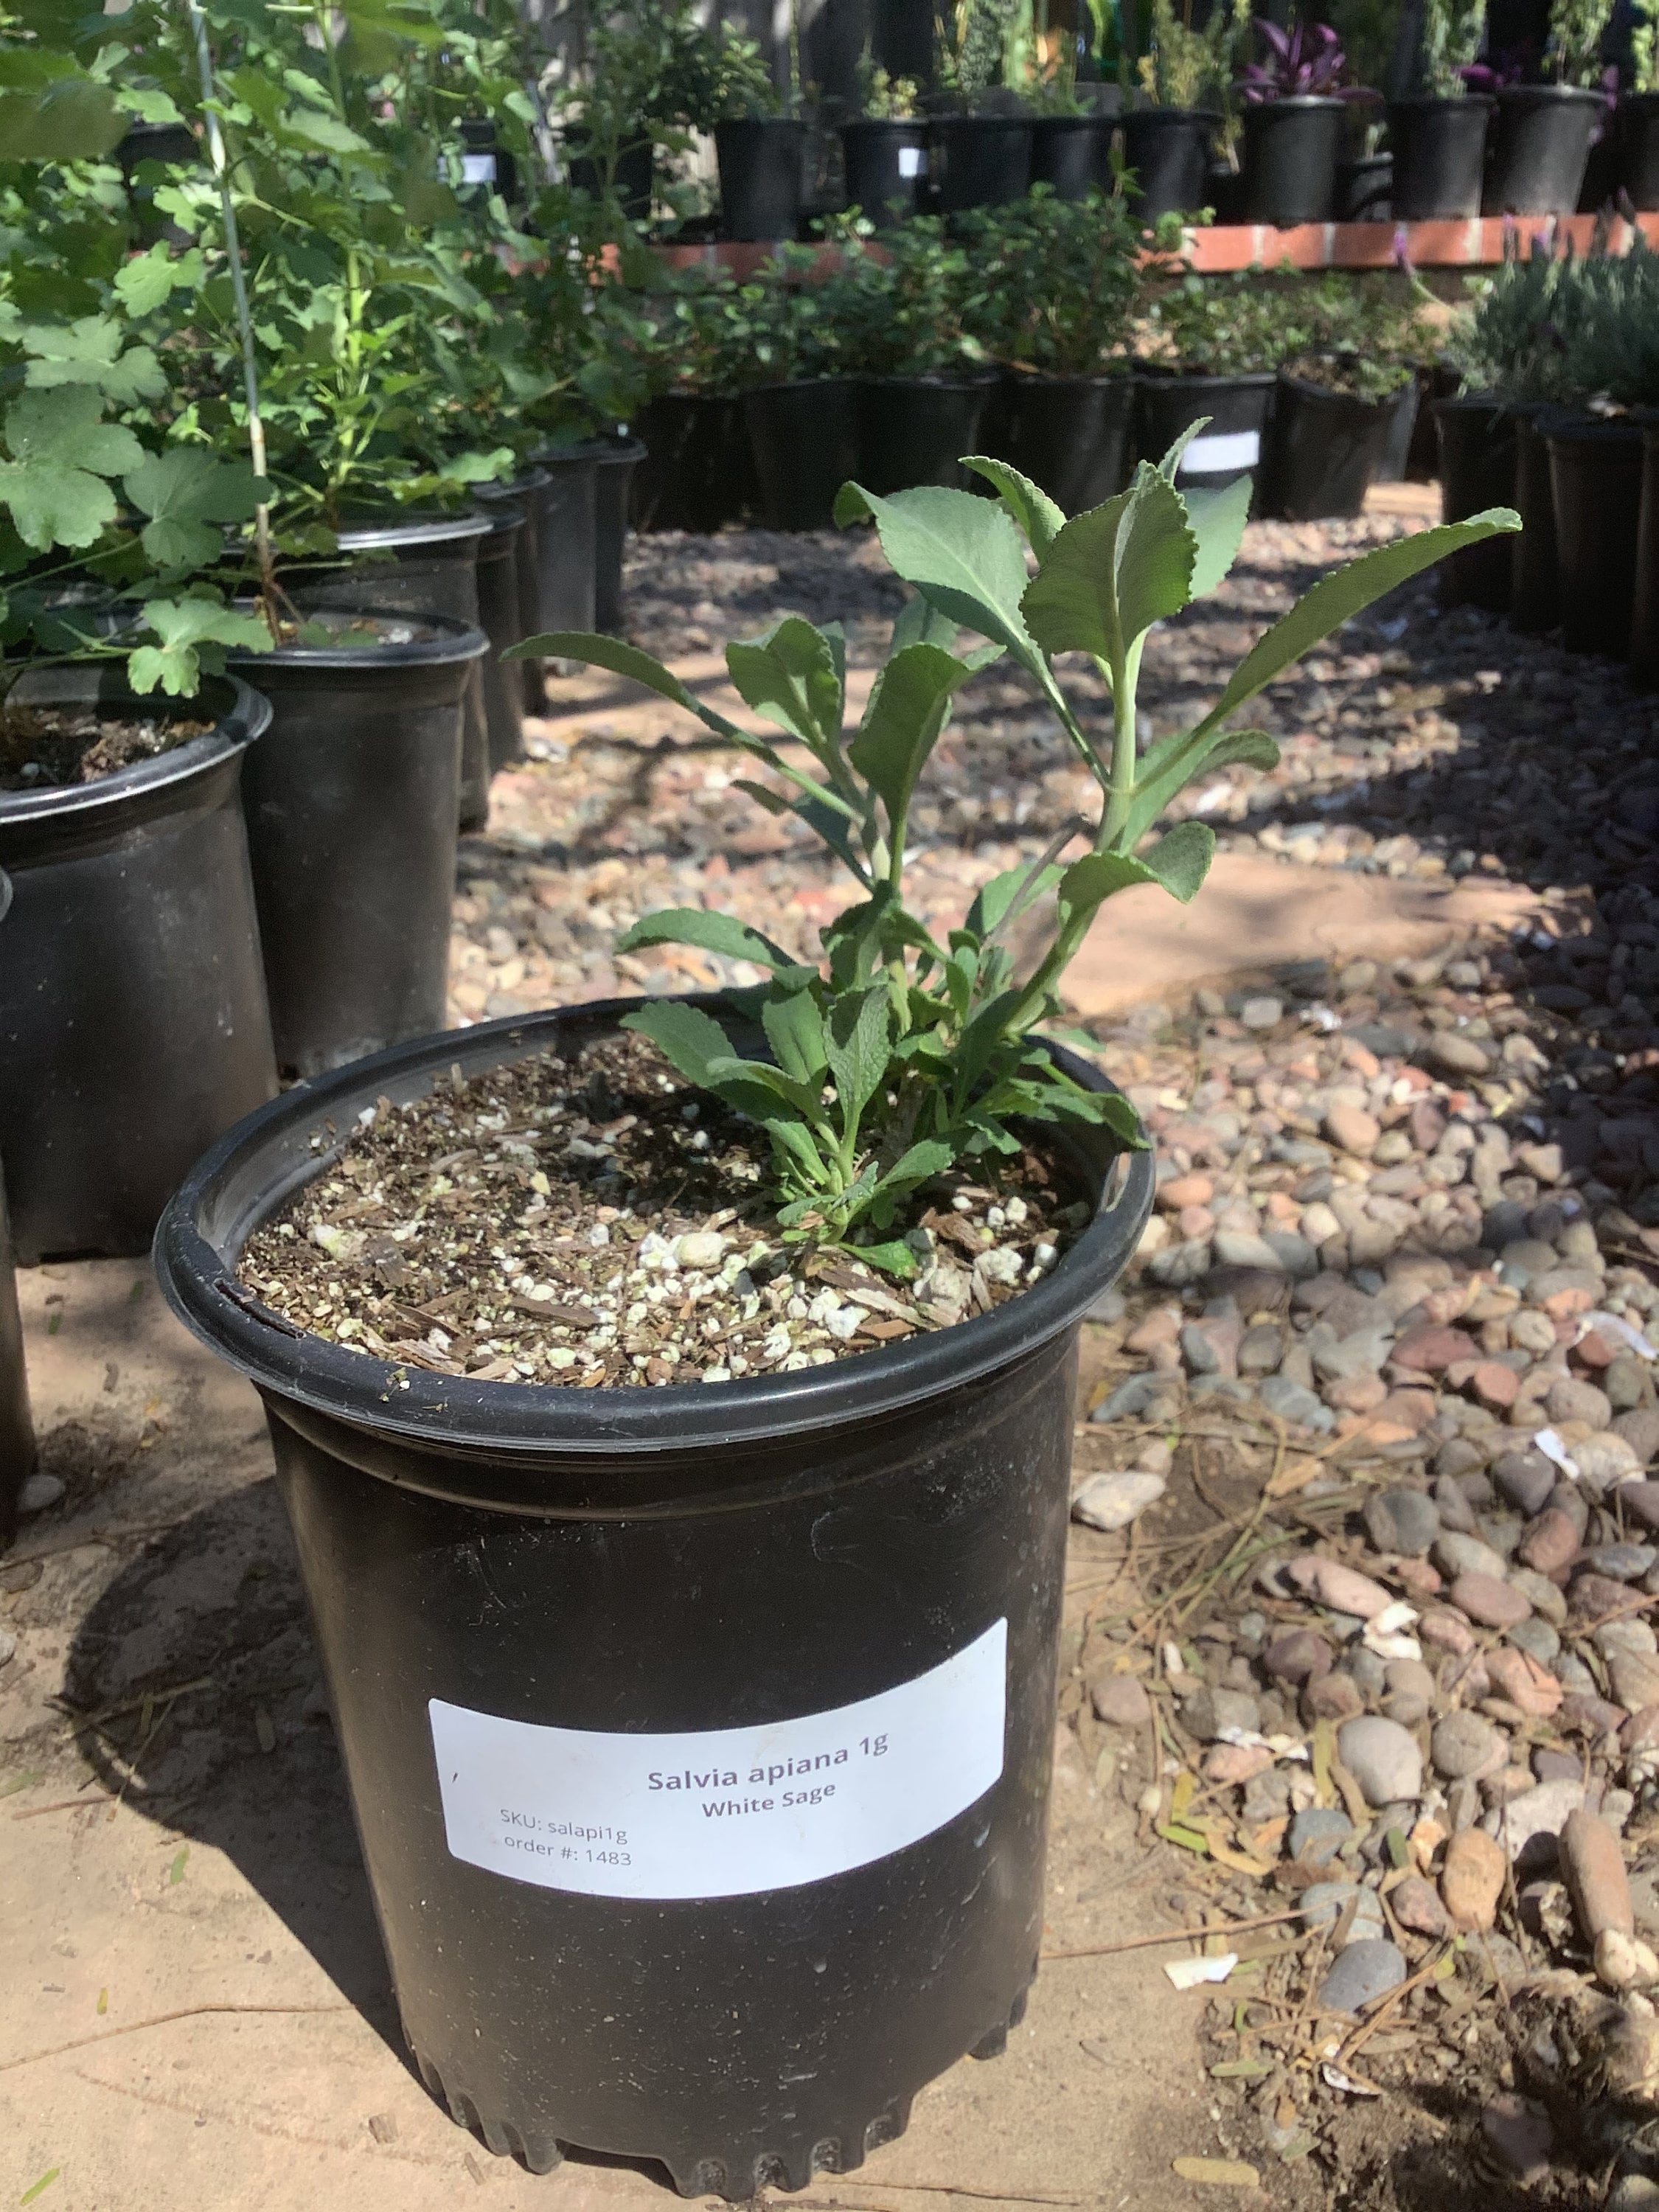  Planta de salvia blanca SALVIA APIANA Maceta de 1 galón Planta  nativa viva de California : Patio, Césped y Jardín